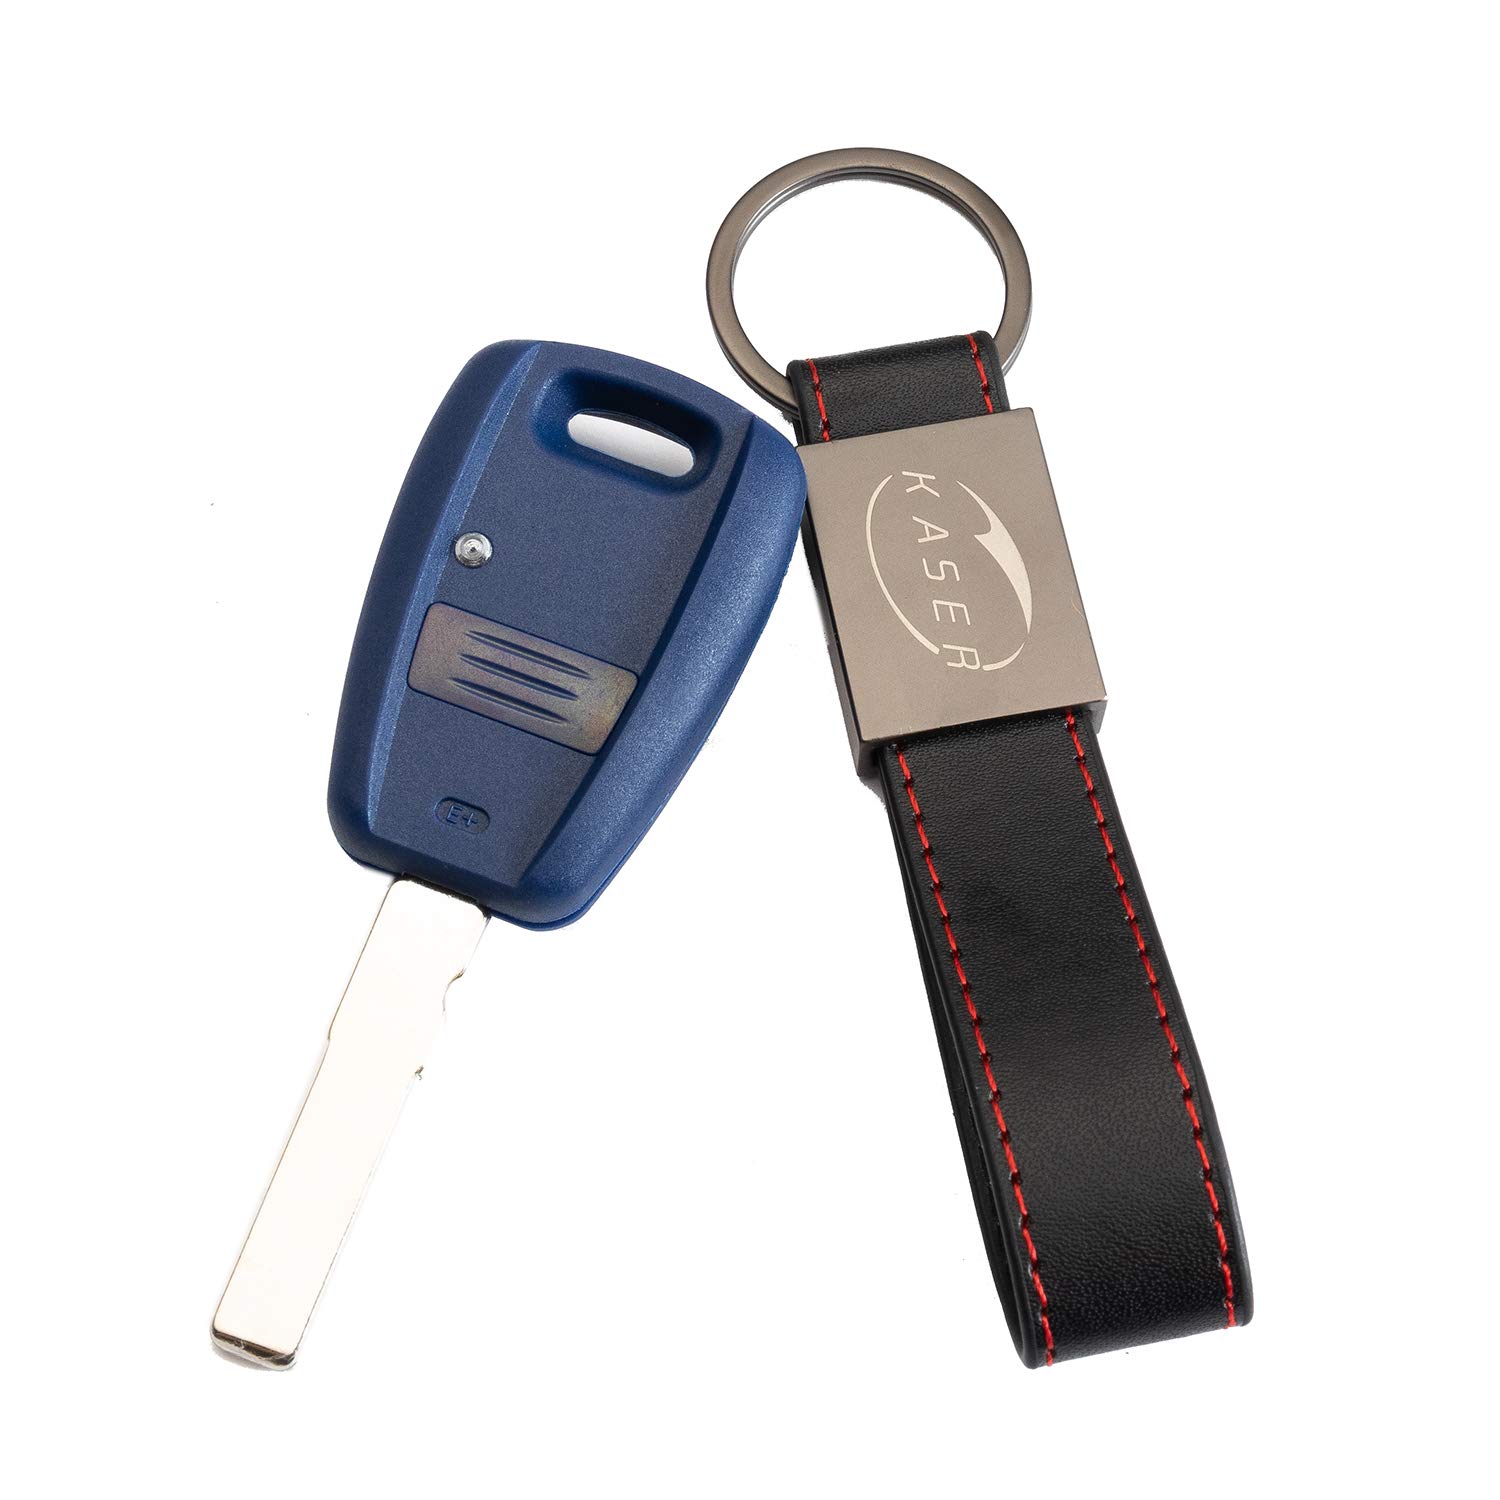 KASER Schlüssel Gehäuse Fernbedienung für 1 Tasten Autoschlüssel Funkschlüssel FIAT Punto Panda Bravo Seicento Stilo Doblo mit Leder Schlüsselanhänger von Kaser